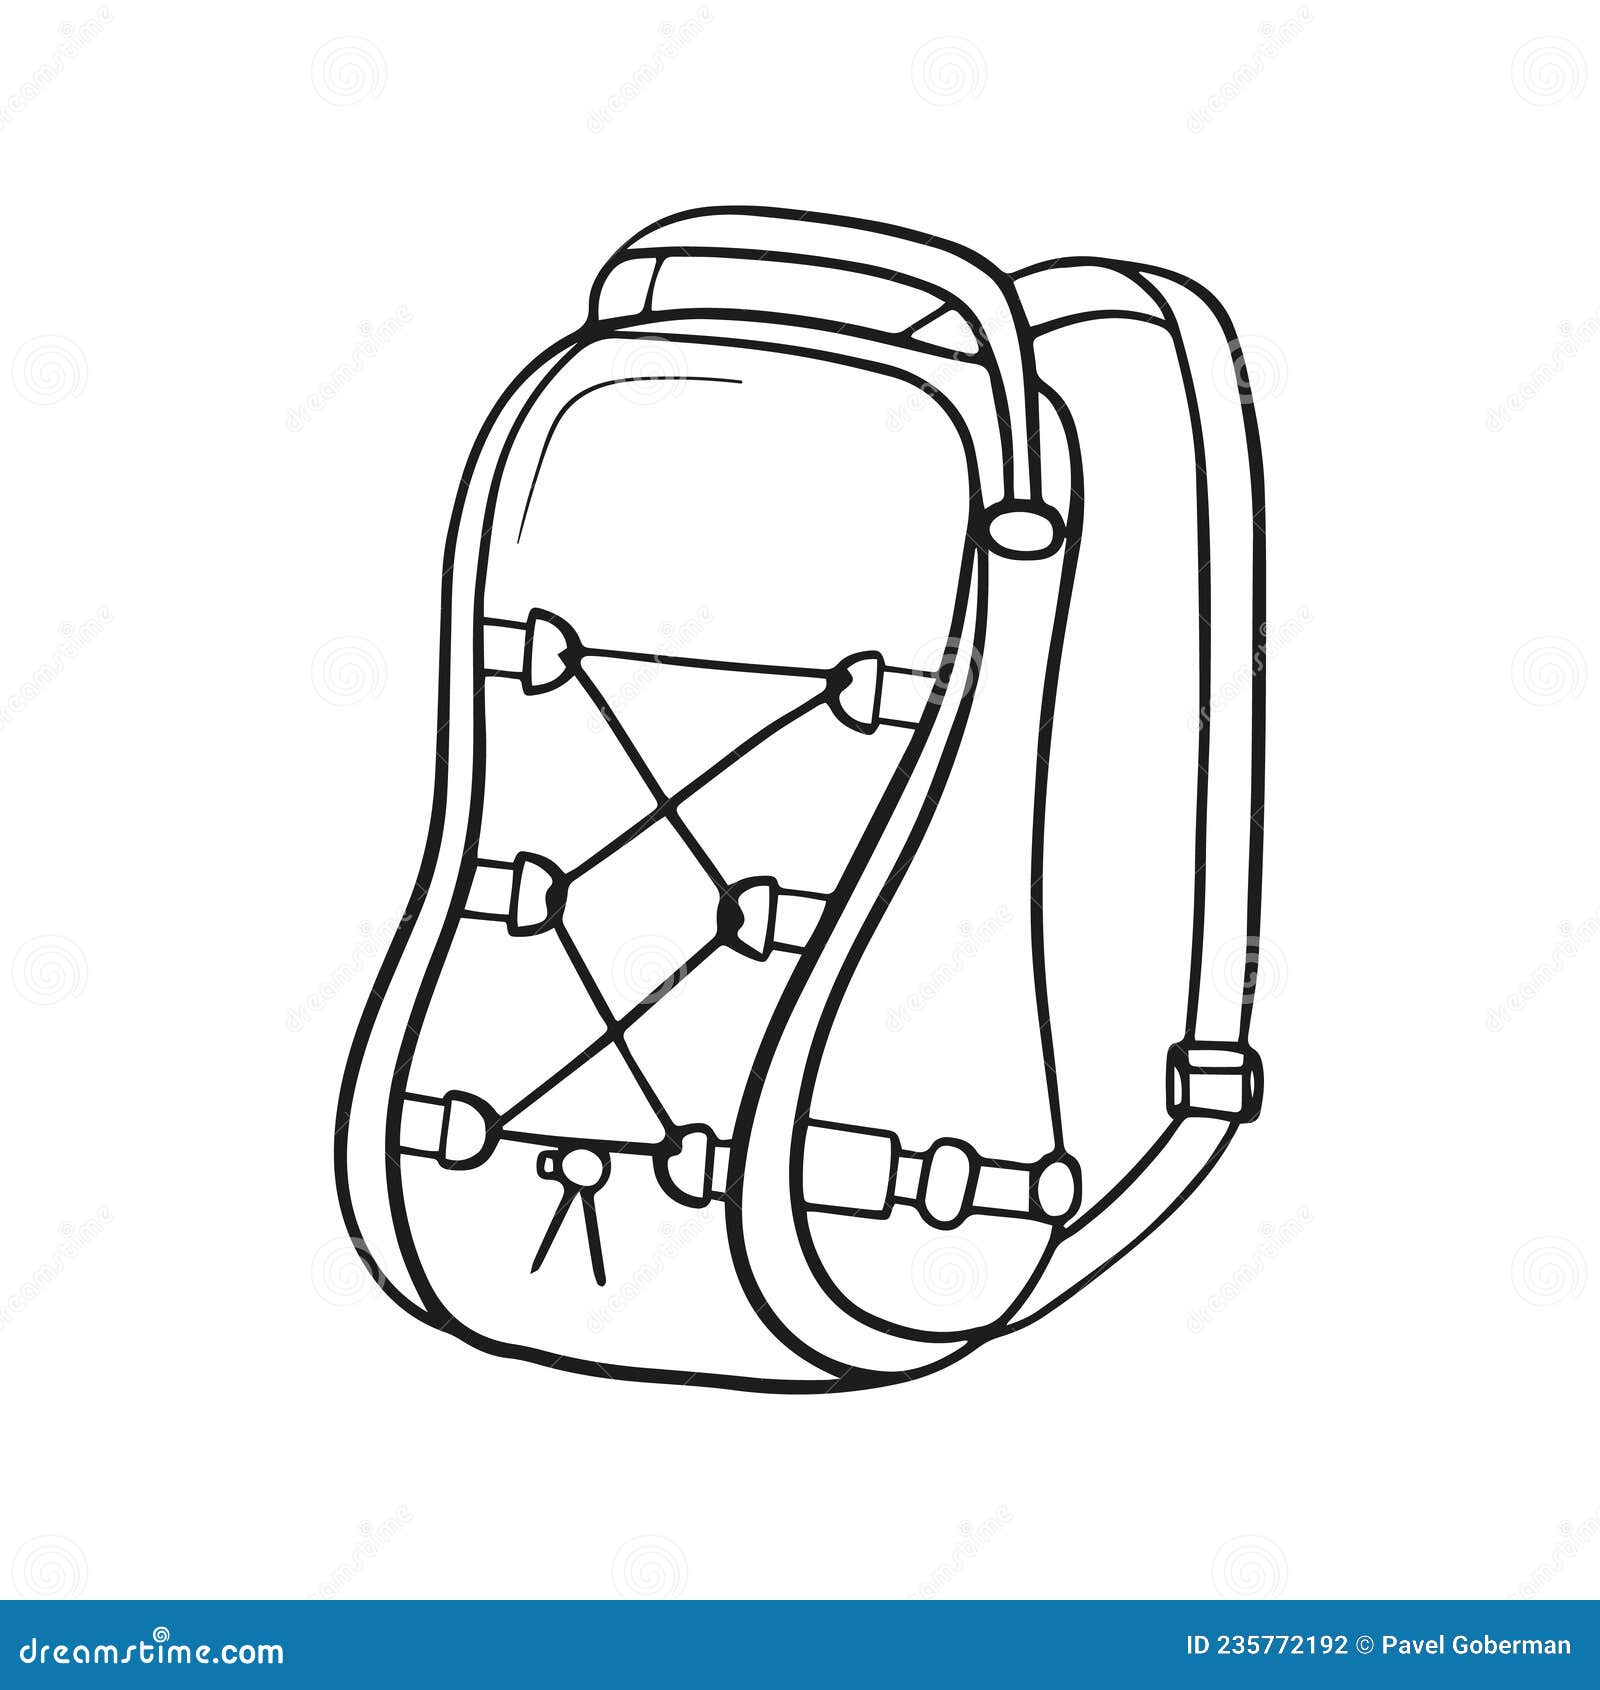 Camping Bag Outline Vector. Travel Backpack, Hiking Backpack Doodle ...